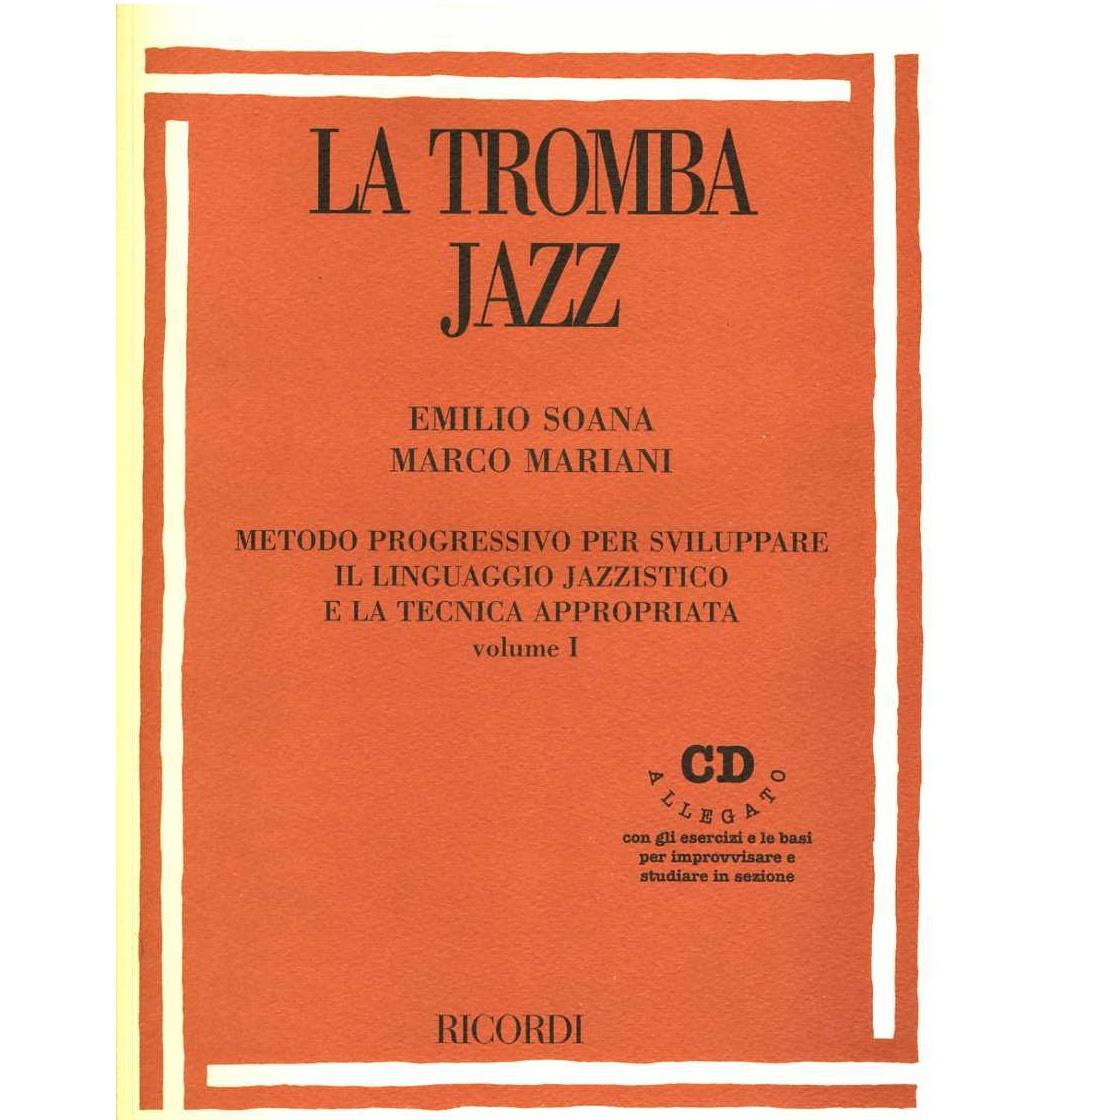 LA TROMBA JAZZ Metodo progressivo per sviluppare il linguaggio jazzistico e la tecnica appropriata volume I - Ricordi